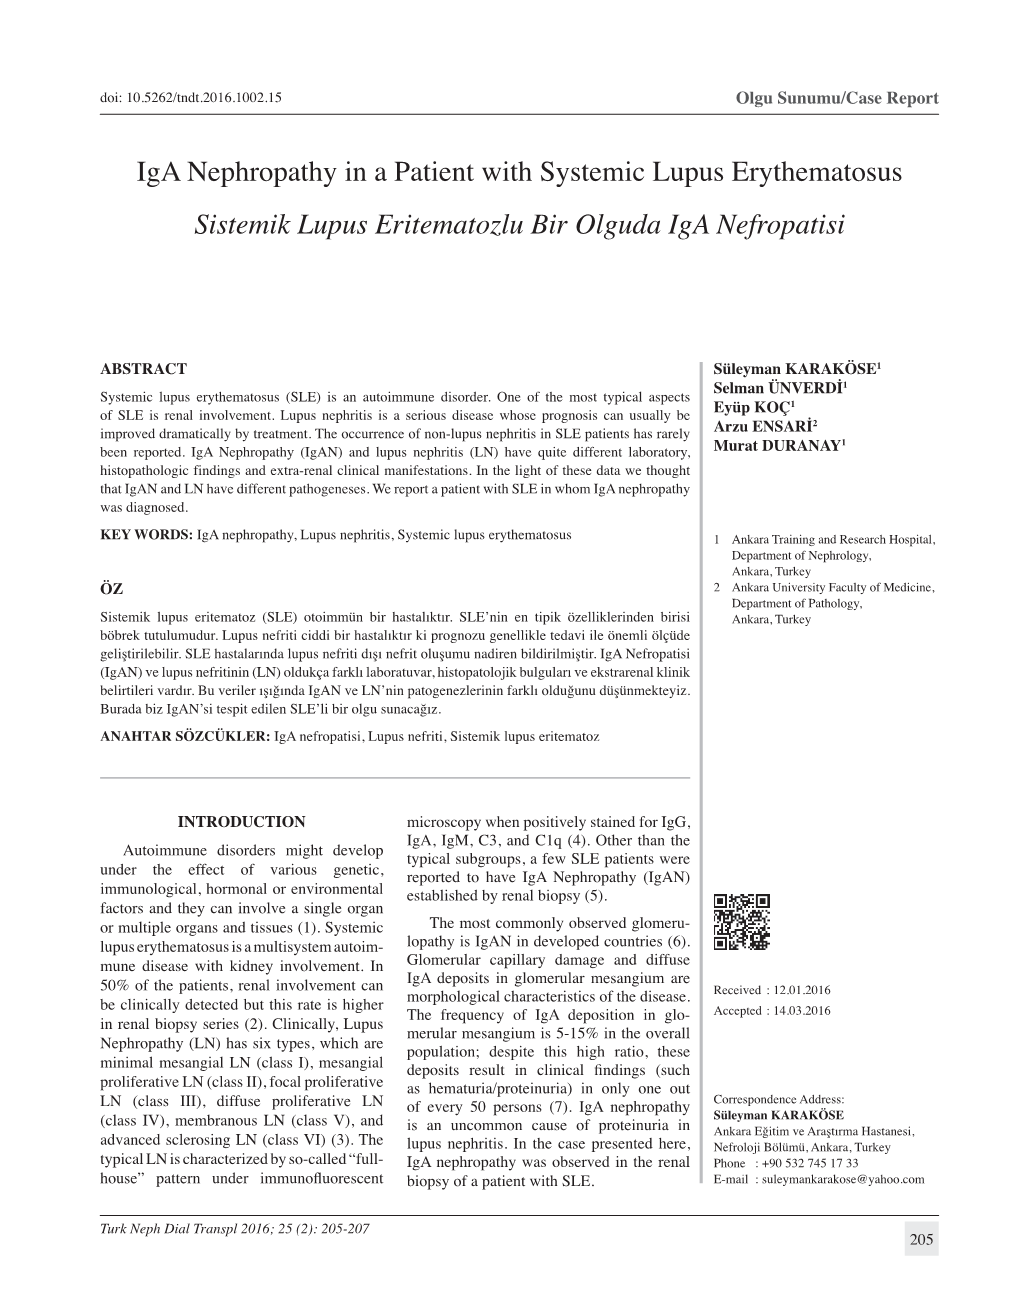 Iga Nephropathy in a Patient with Systemic Lupus Erythematosus Sistemik Lupus Eritematozlu Bir Olguda Iga Nefropatisi